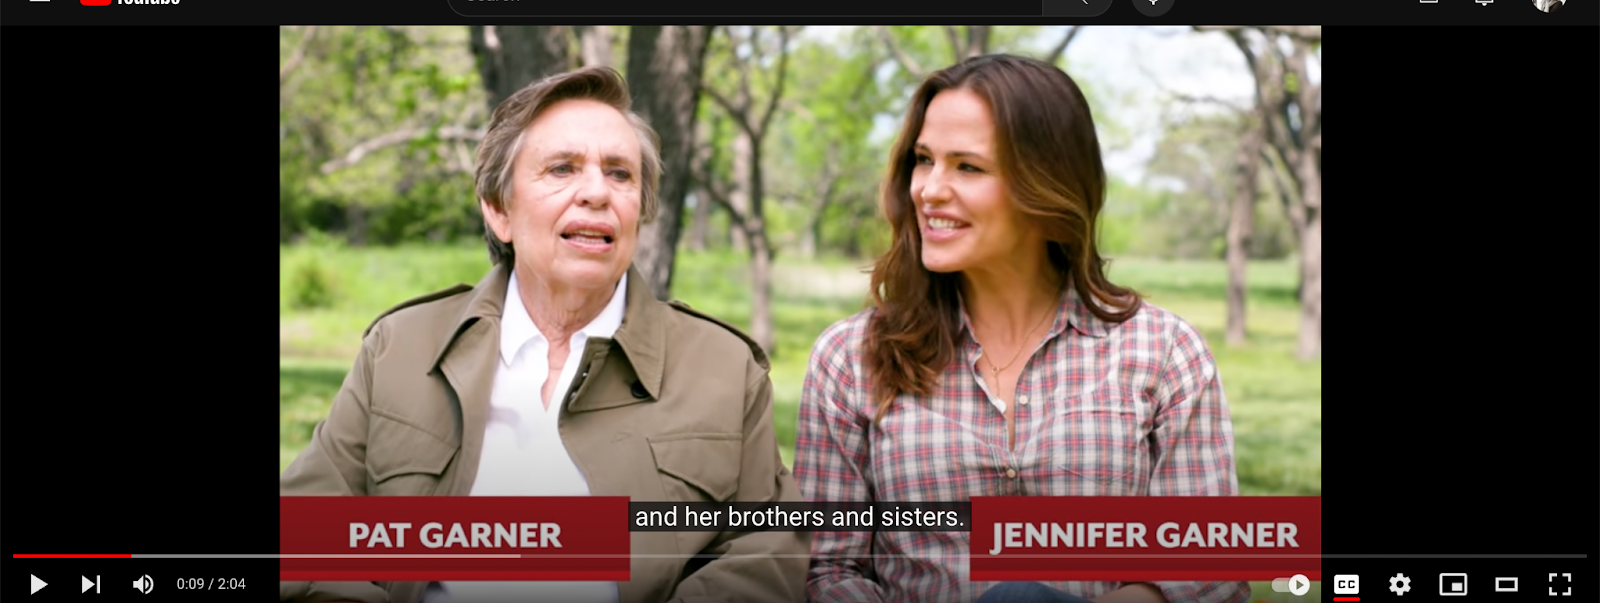 Patricia et Jennifer Garner sur une vidéo datée du 14 août 2018 | Source : Youtube.com/@southernliving